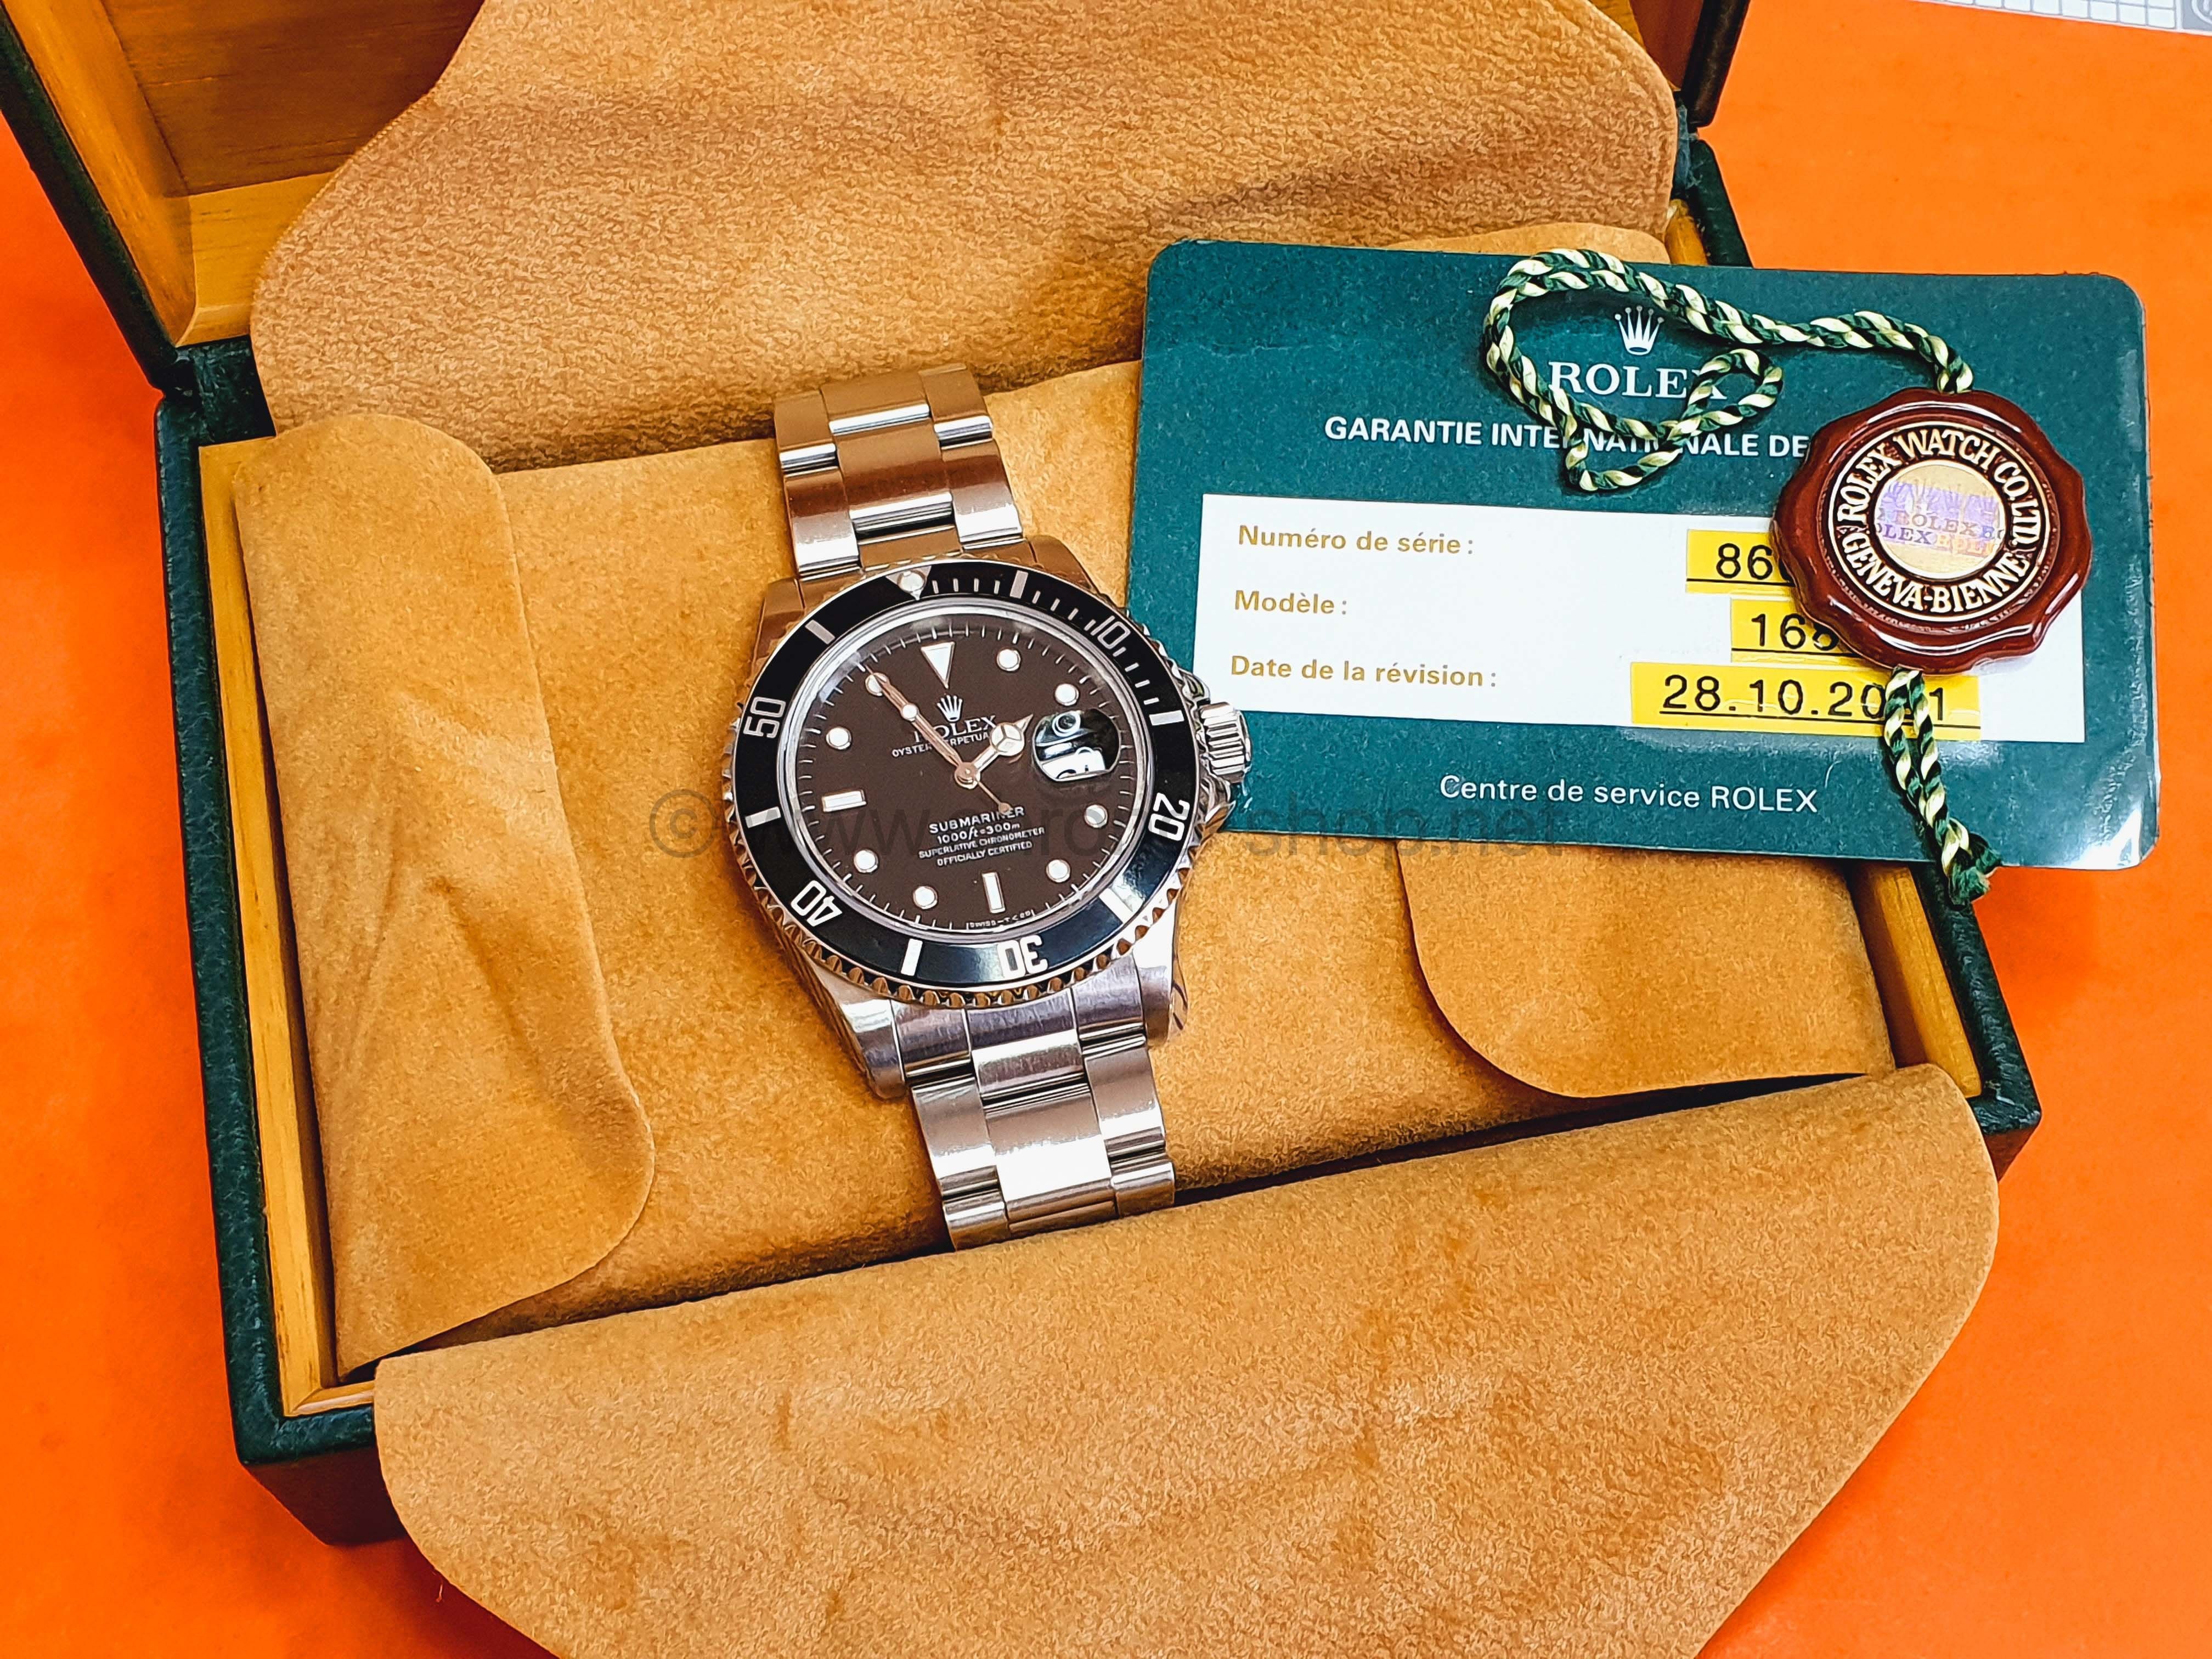 Rolex Mint Submariner Date 16800 Vintage Divers Watch Circa 1985 Rolex serviced 2 Years International Warranty